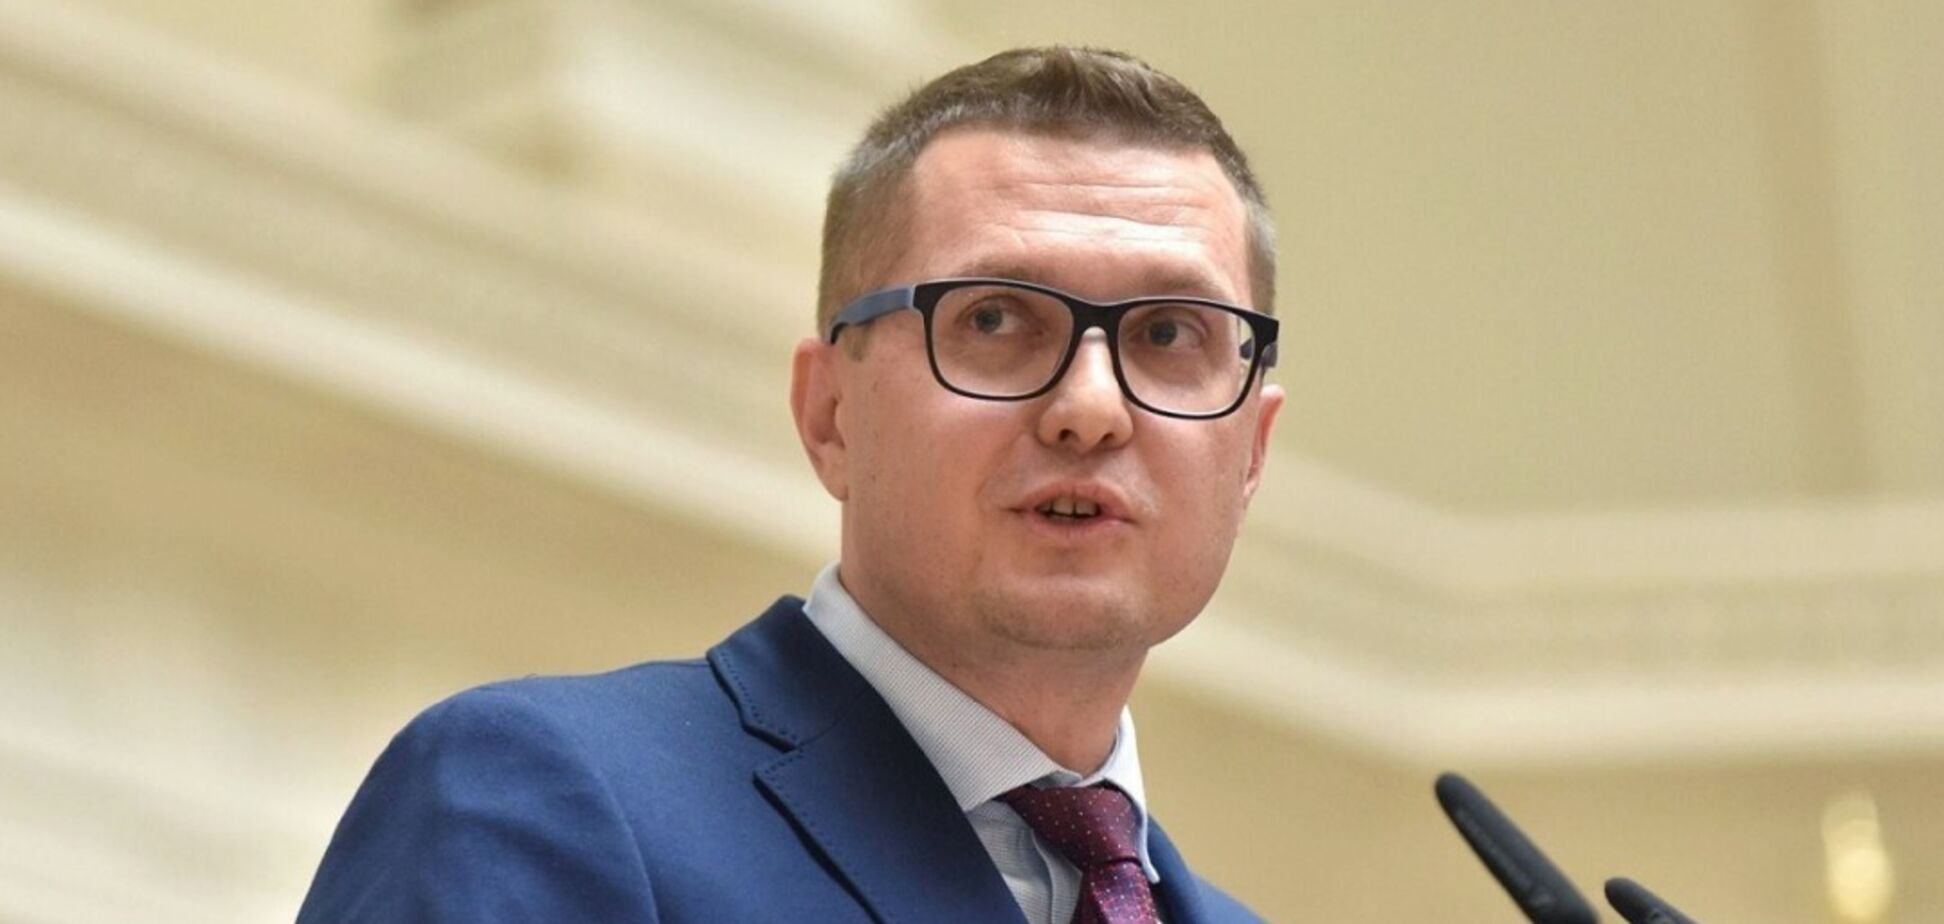 Запропонований нардепами законопроєкт про СБУ послаблює безпеку України, – Баканов